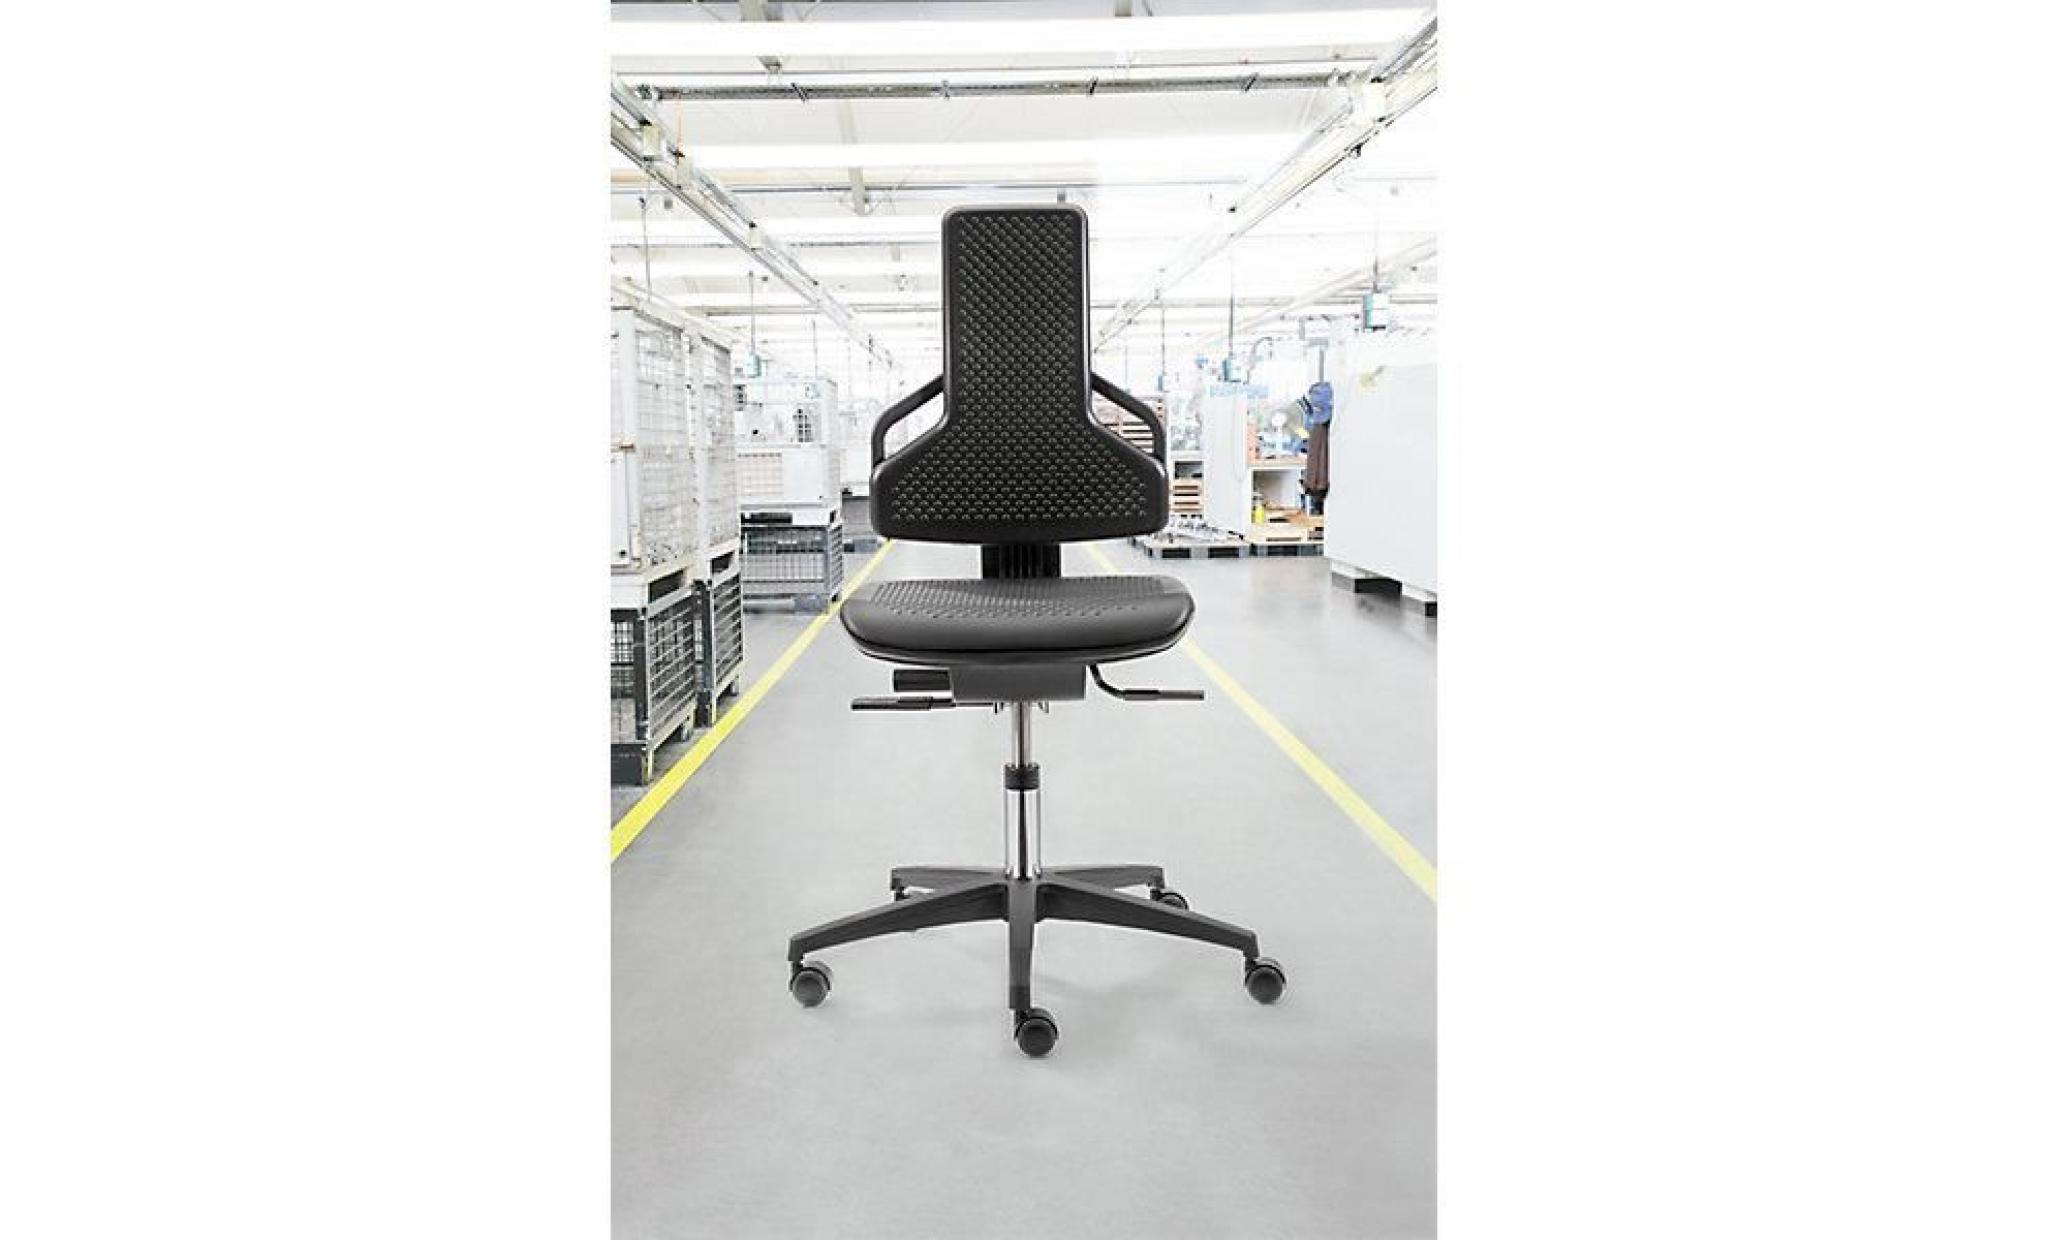 dauphin siège d'atelier   avec roulettes   habillage tissu anthracite   chaise chaises siège d'atelier siège pivotant sièges